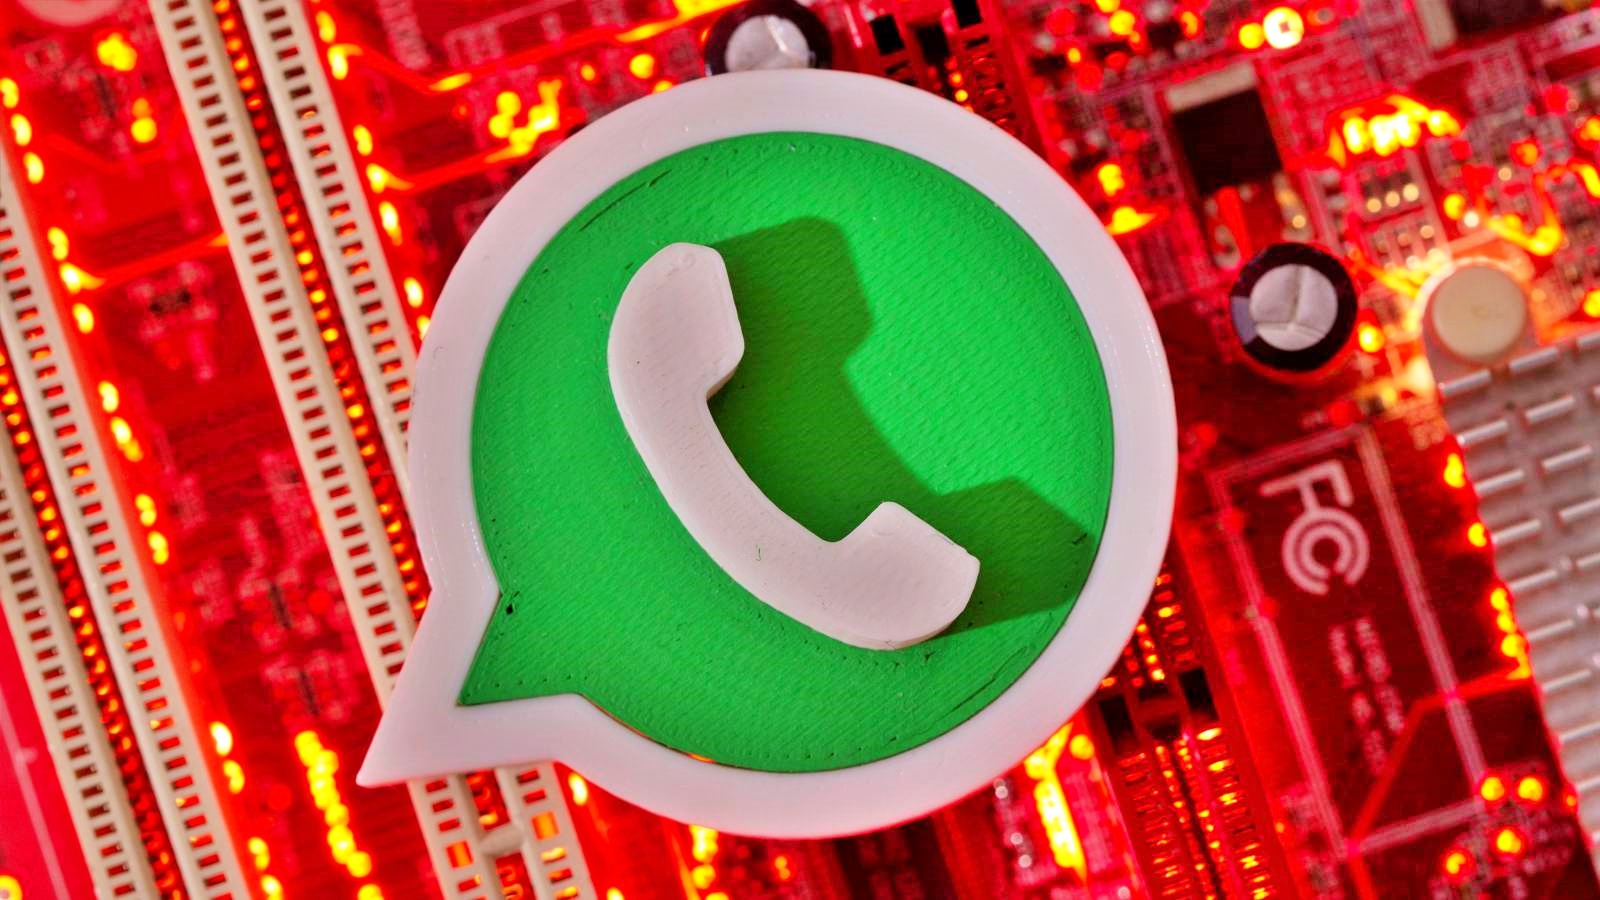 Beneficio de WhatsApp anunciado OFICIALMENTE para personas de iPhone y Android